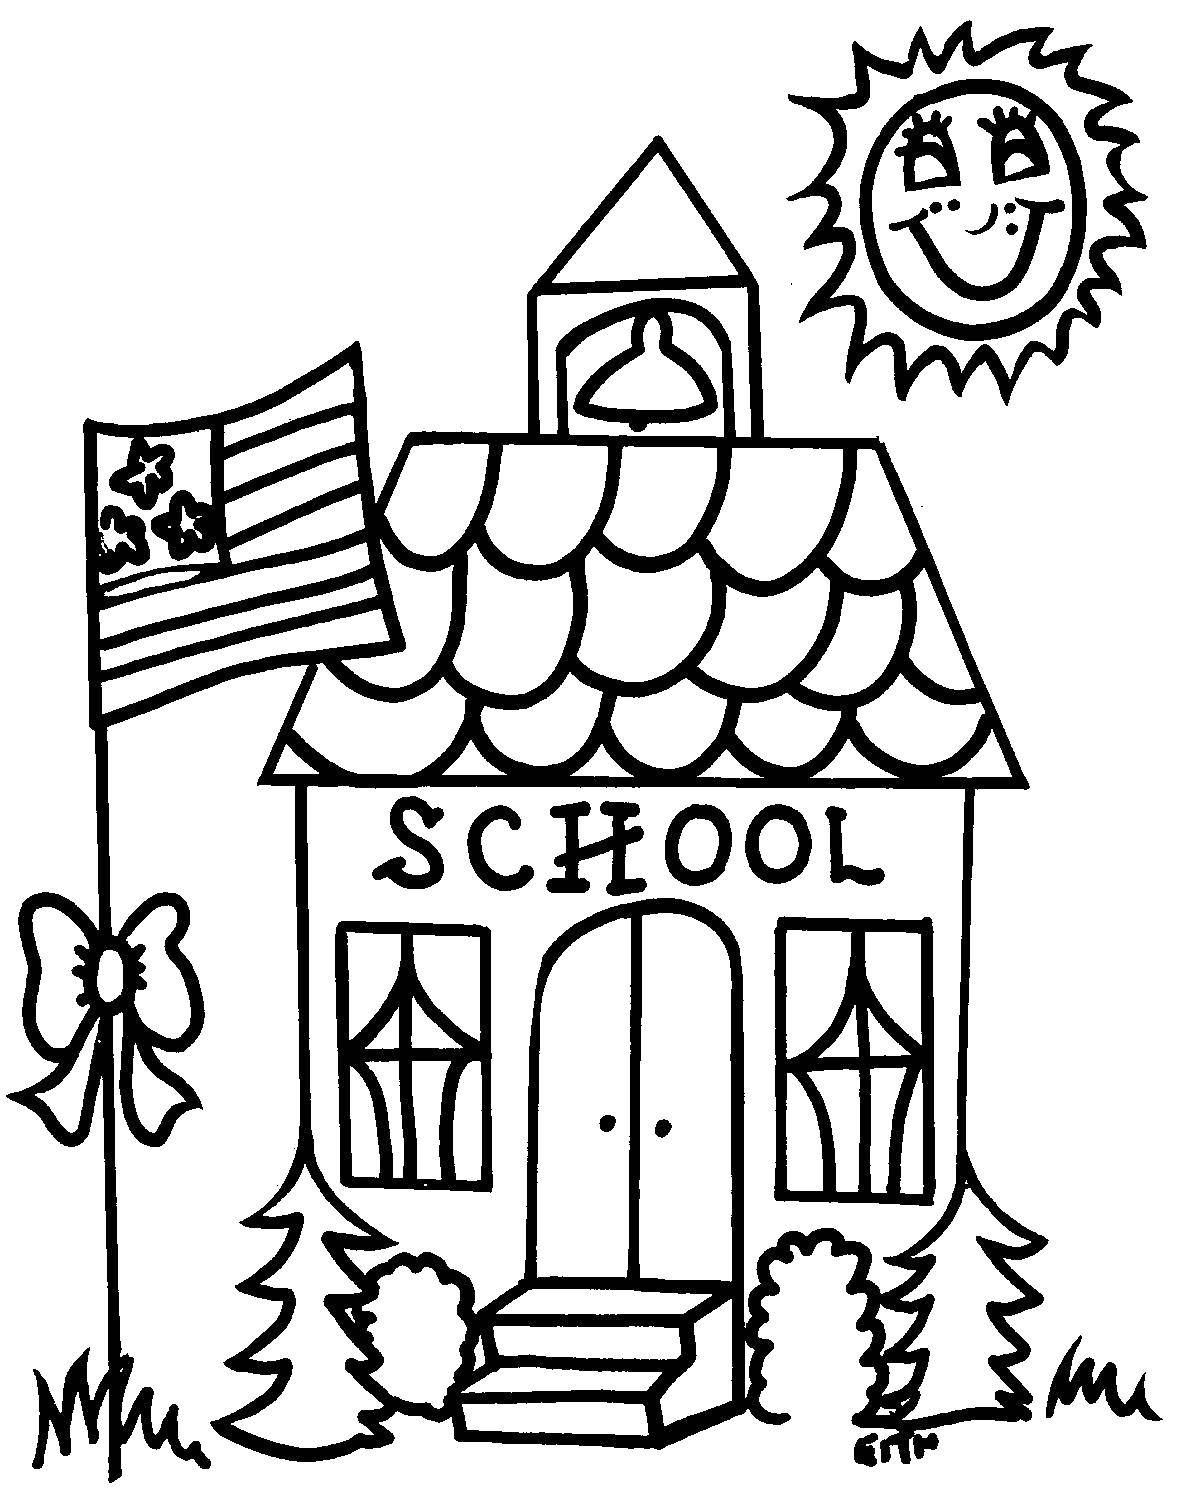 Название: Раскраска Воскресная школа. Категория: Раскраски дом. Теги: дом, школа, воскресная школа.